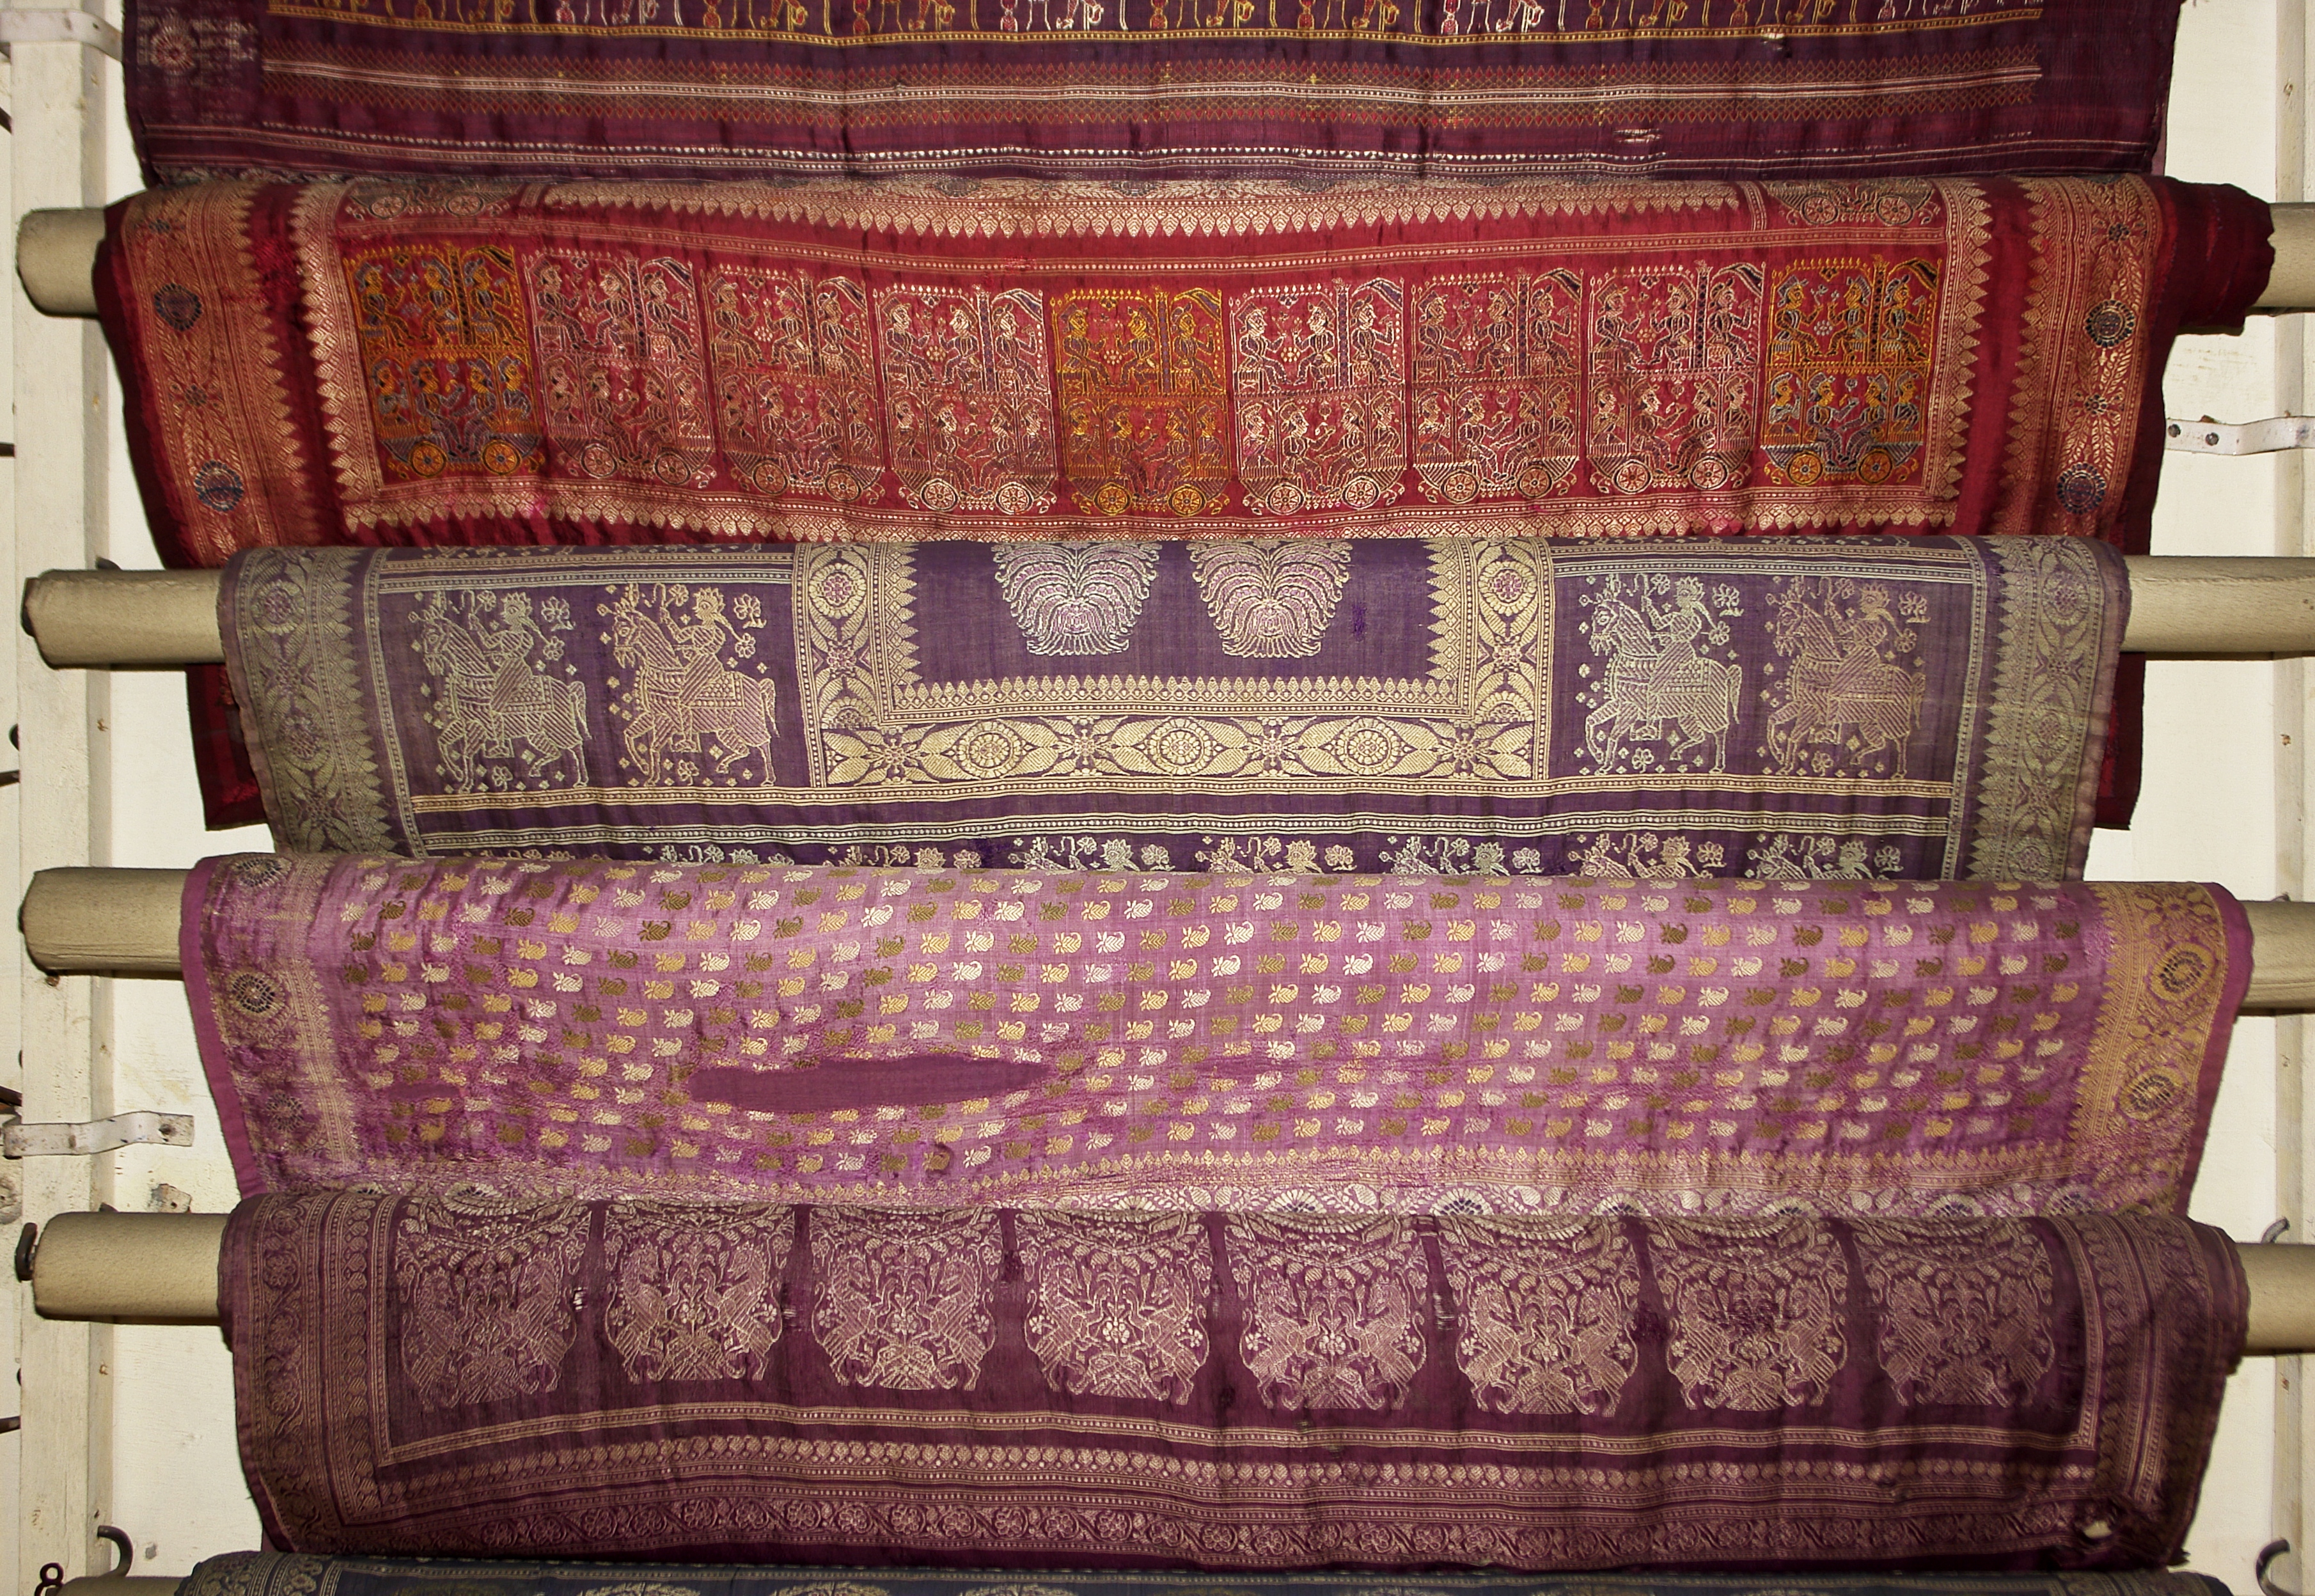 Saris 1, Crafts Museum, New Delhi, India